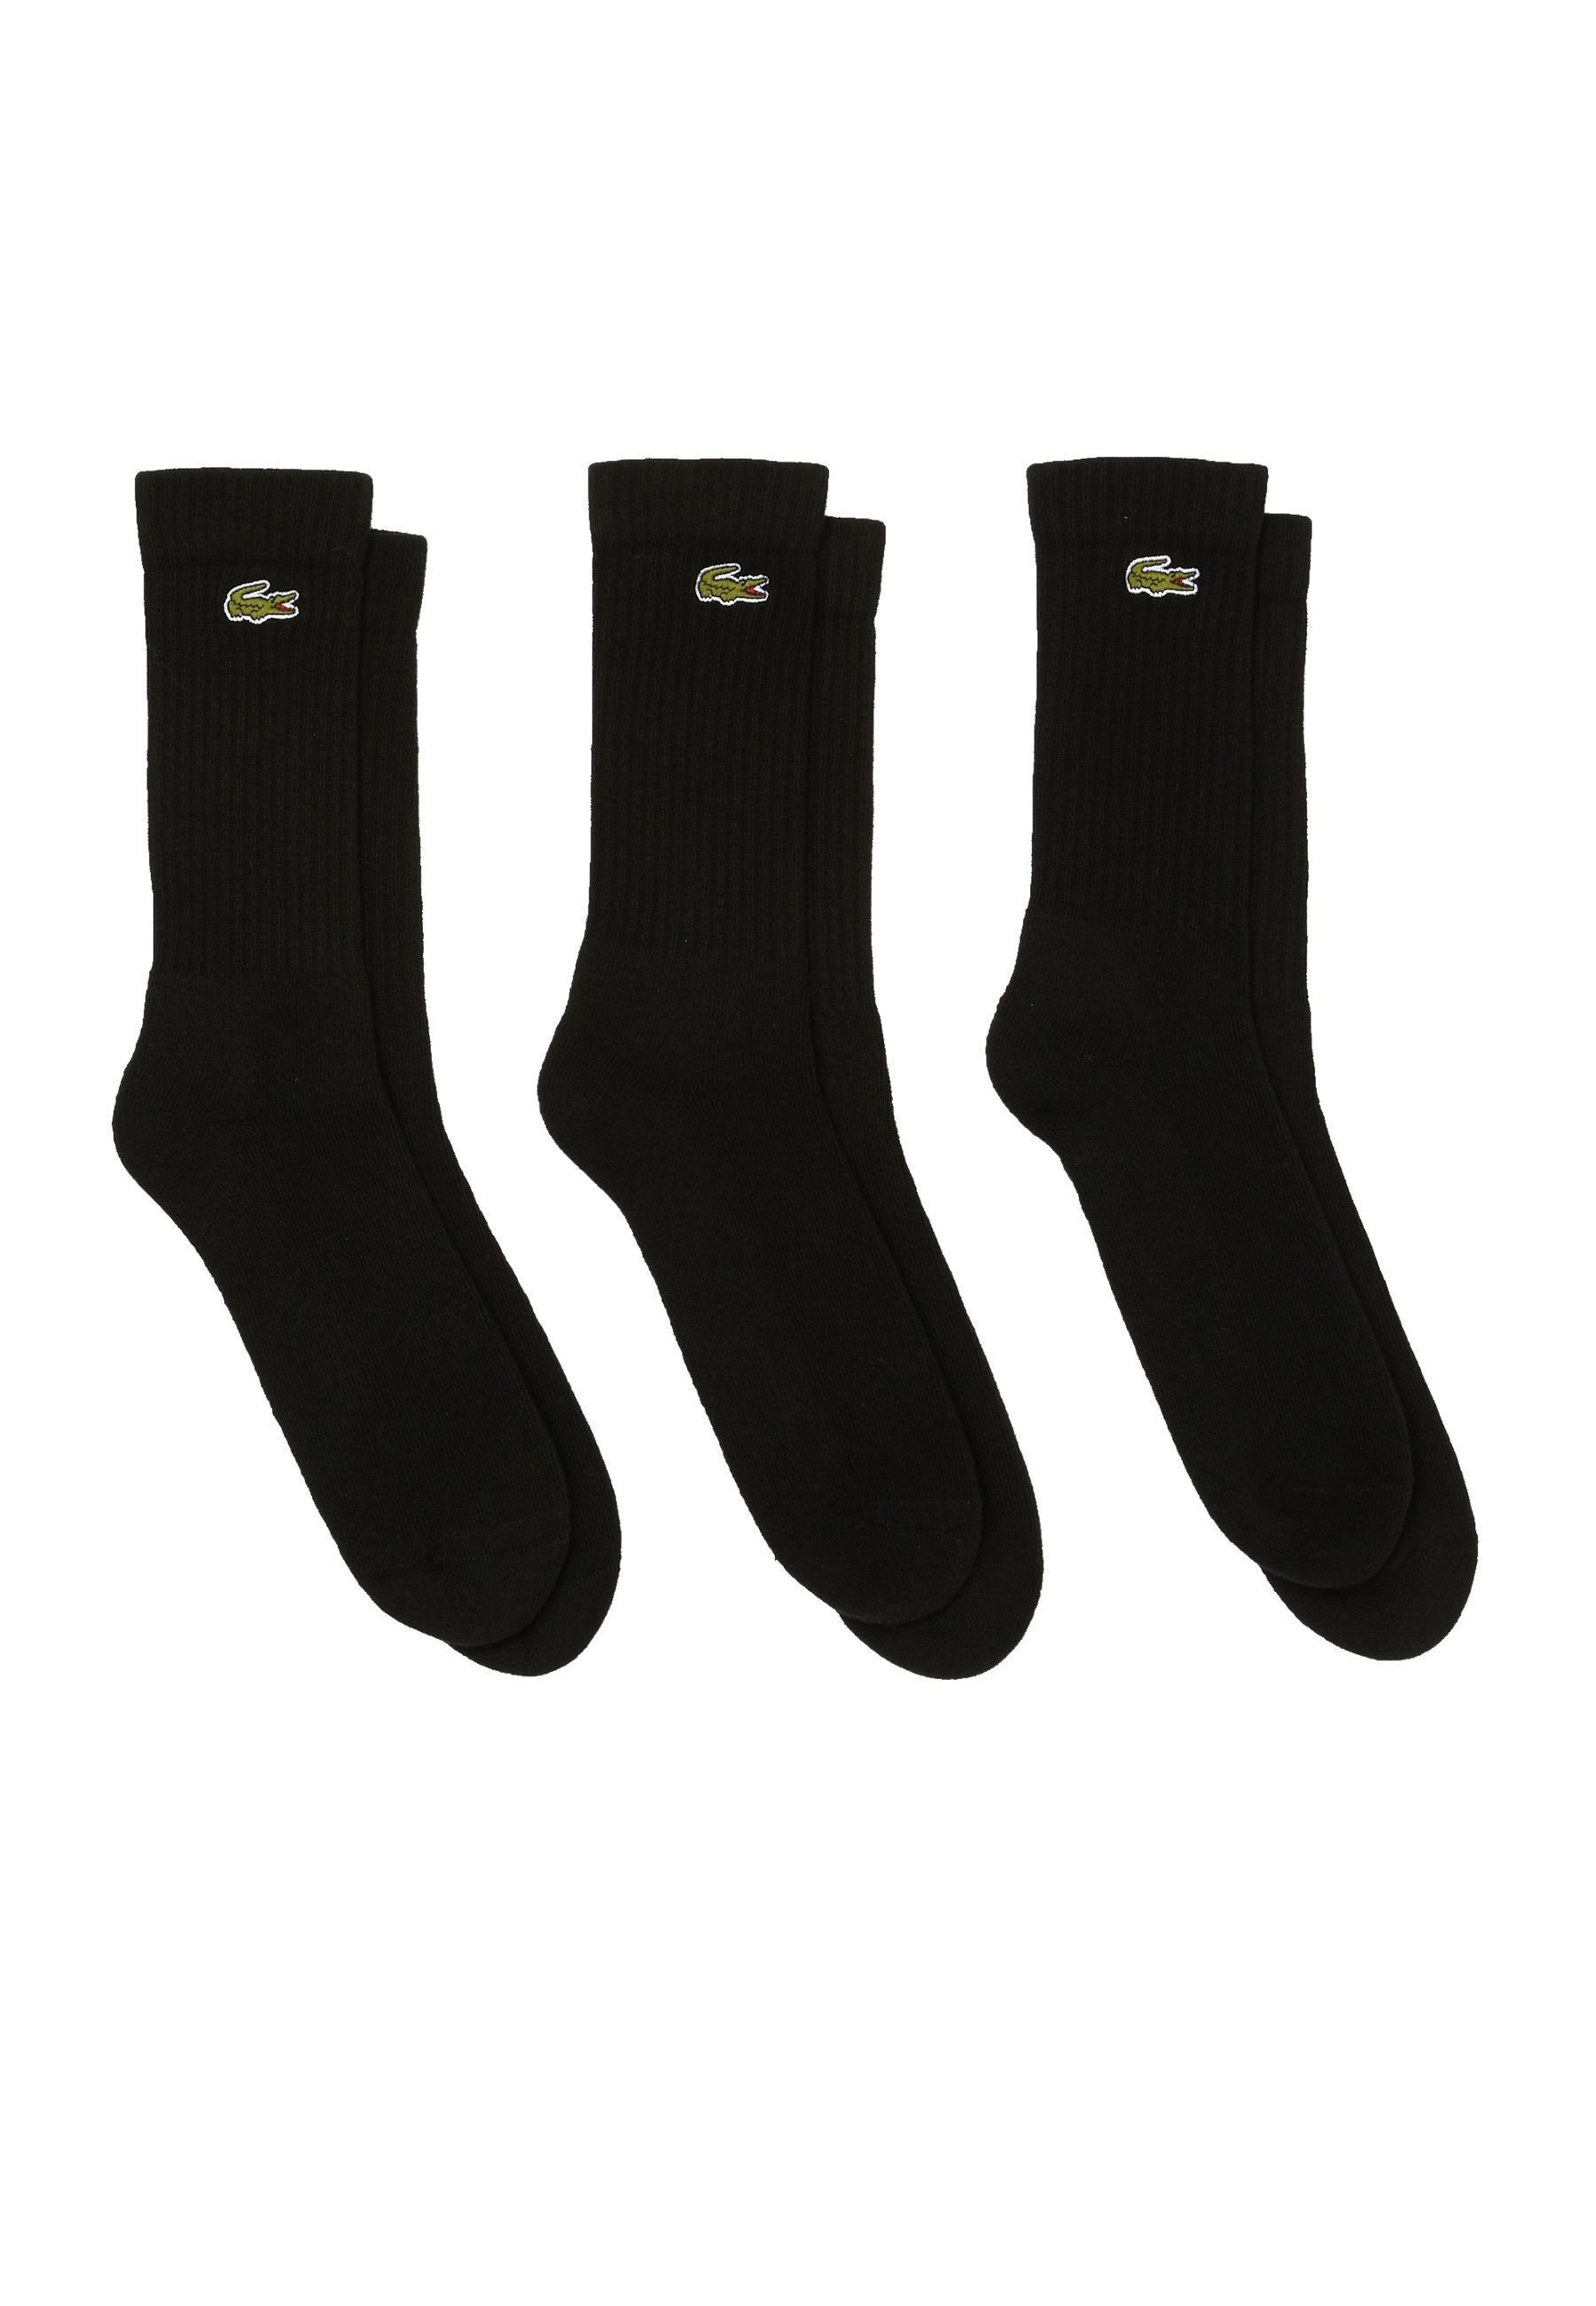 Lacoste Socken Socken Permanent Dreierpack schwarz Socken hohe (3-Paar) Offer